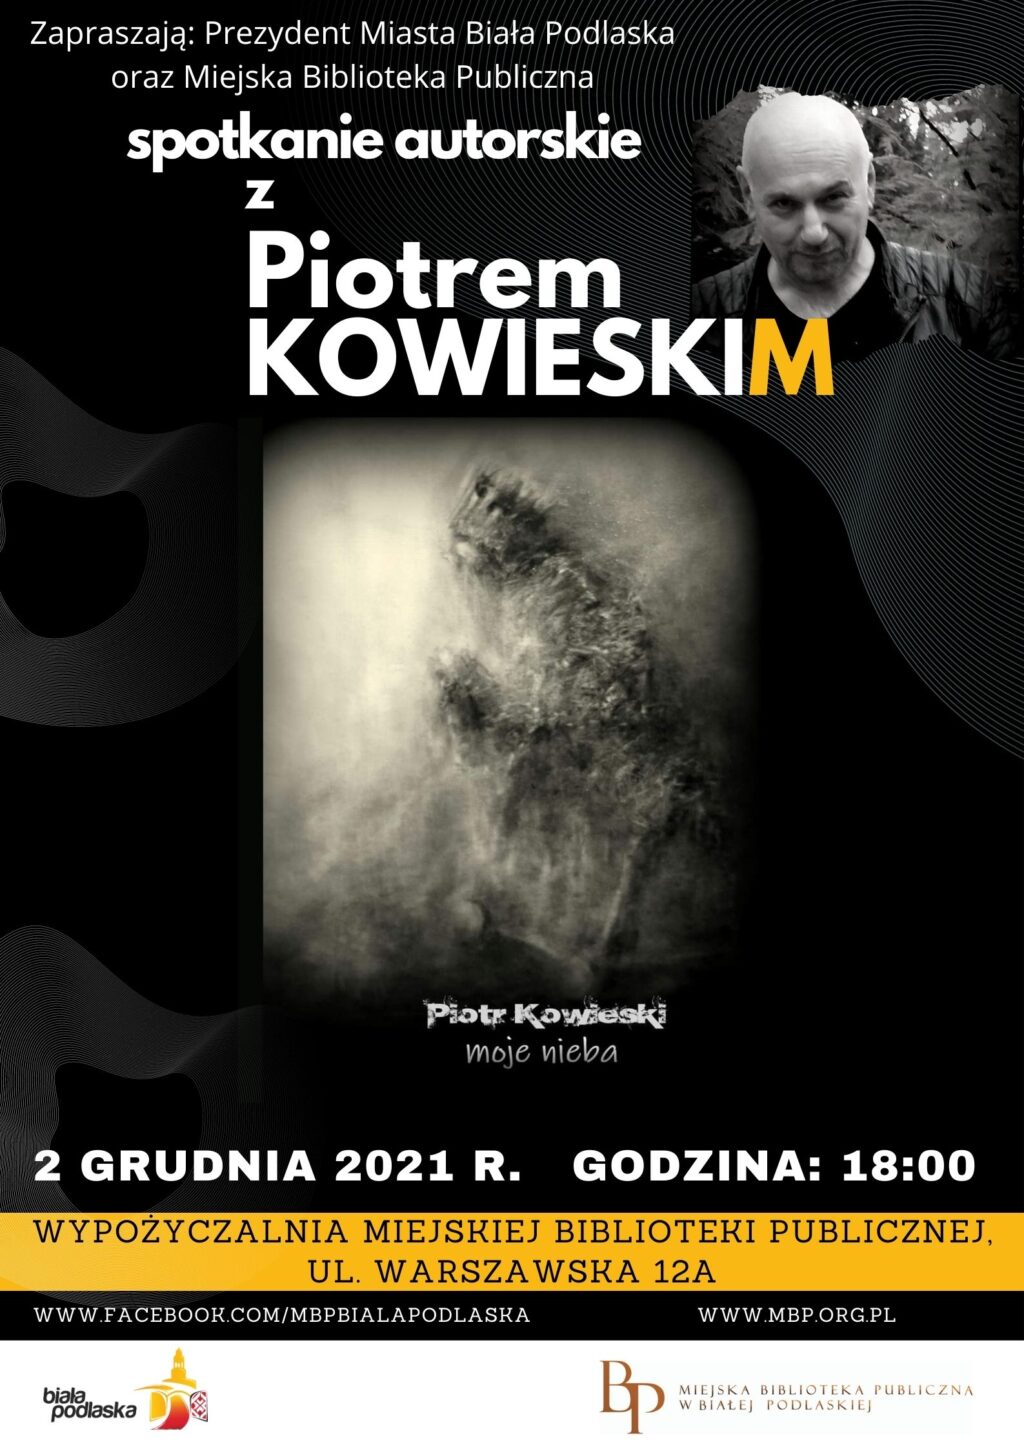 Spotkanie z Piotrem Kowieskim w Miejskiej Bibliotece Publicznej